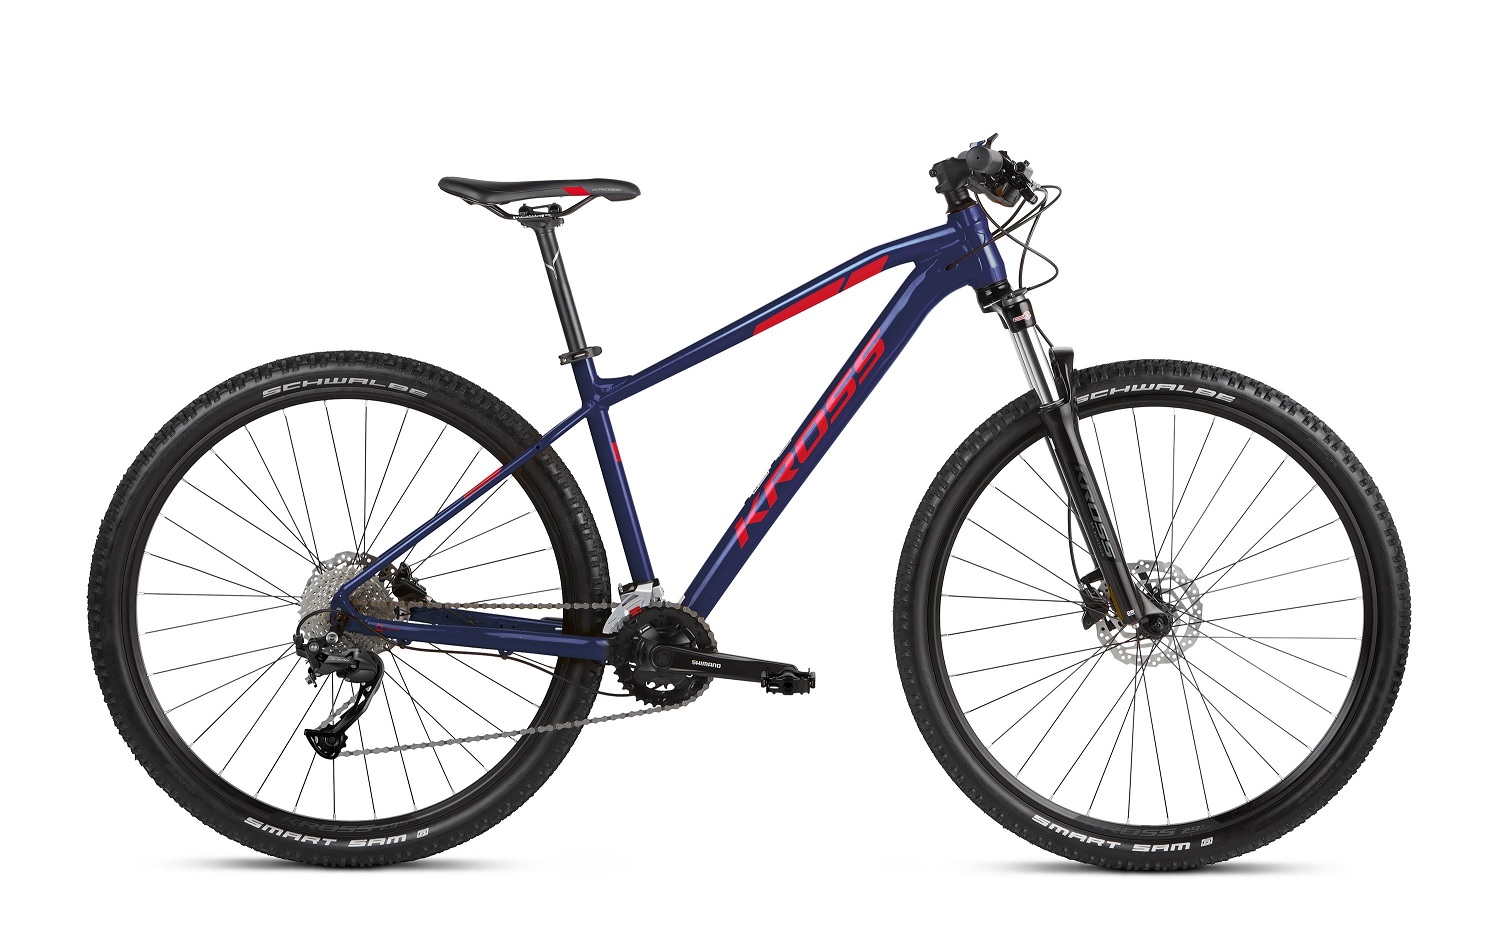 Kross Level 2.0 maastopyörä isoilla 29" renkailla ja tyylikkäänä sini-punaisena värinä.